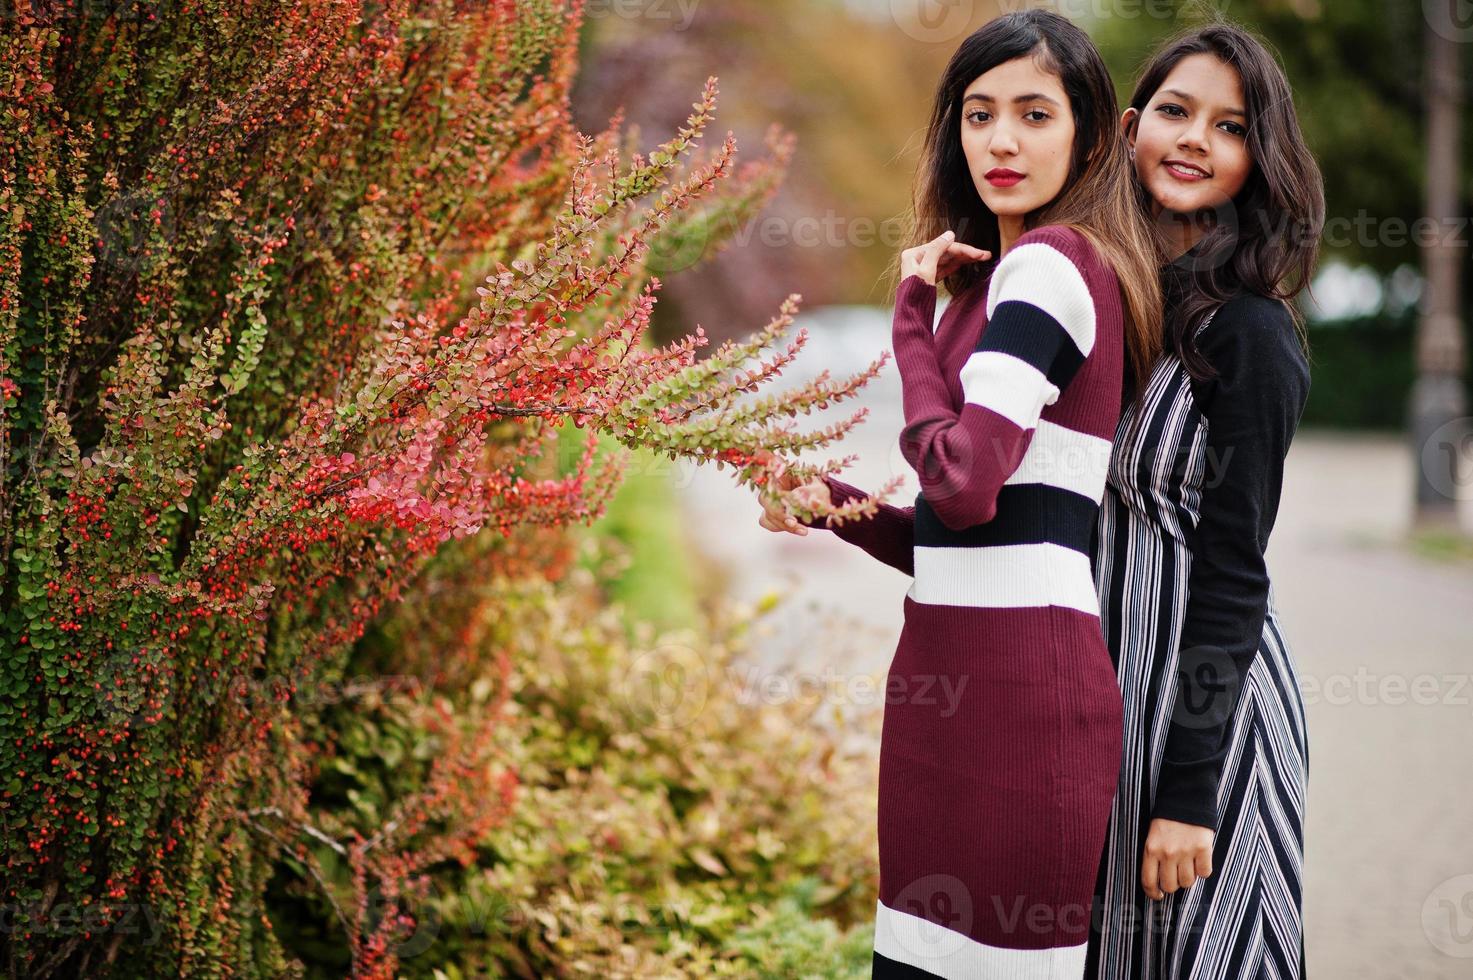 retrato de dois jovens lindos indianos ou adolescentes do sul da Ásia em vestido posou perto de arbustos. foto